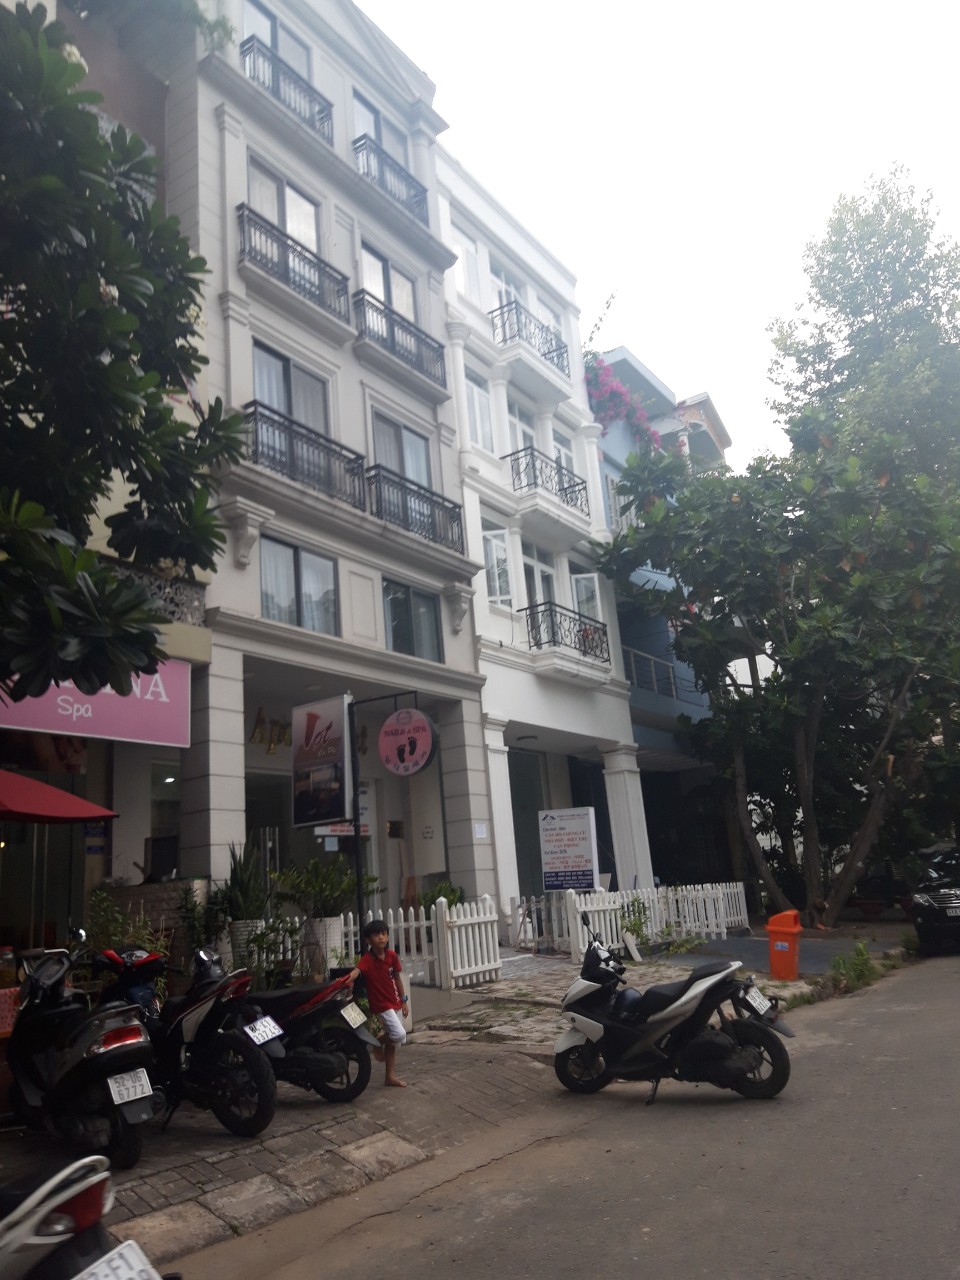 Cho thuê nhà phố Hưng Gia, mặt tiền đường lớn, giá tốt nhất thị trường 40 triệu/tháng LH: 091521 3434 PHONG.